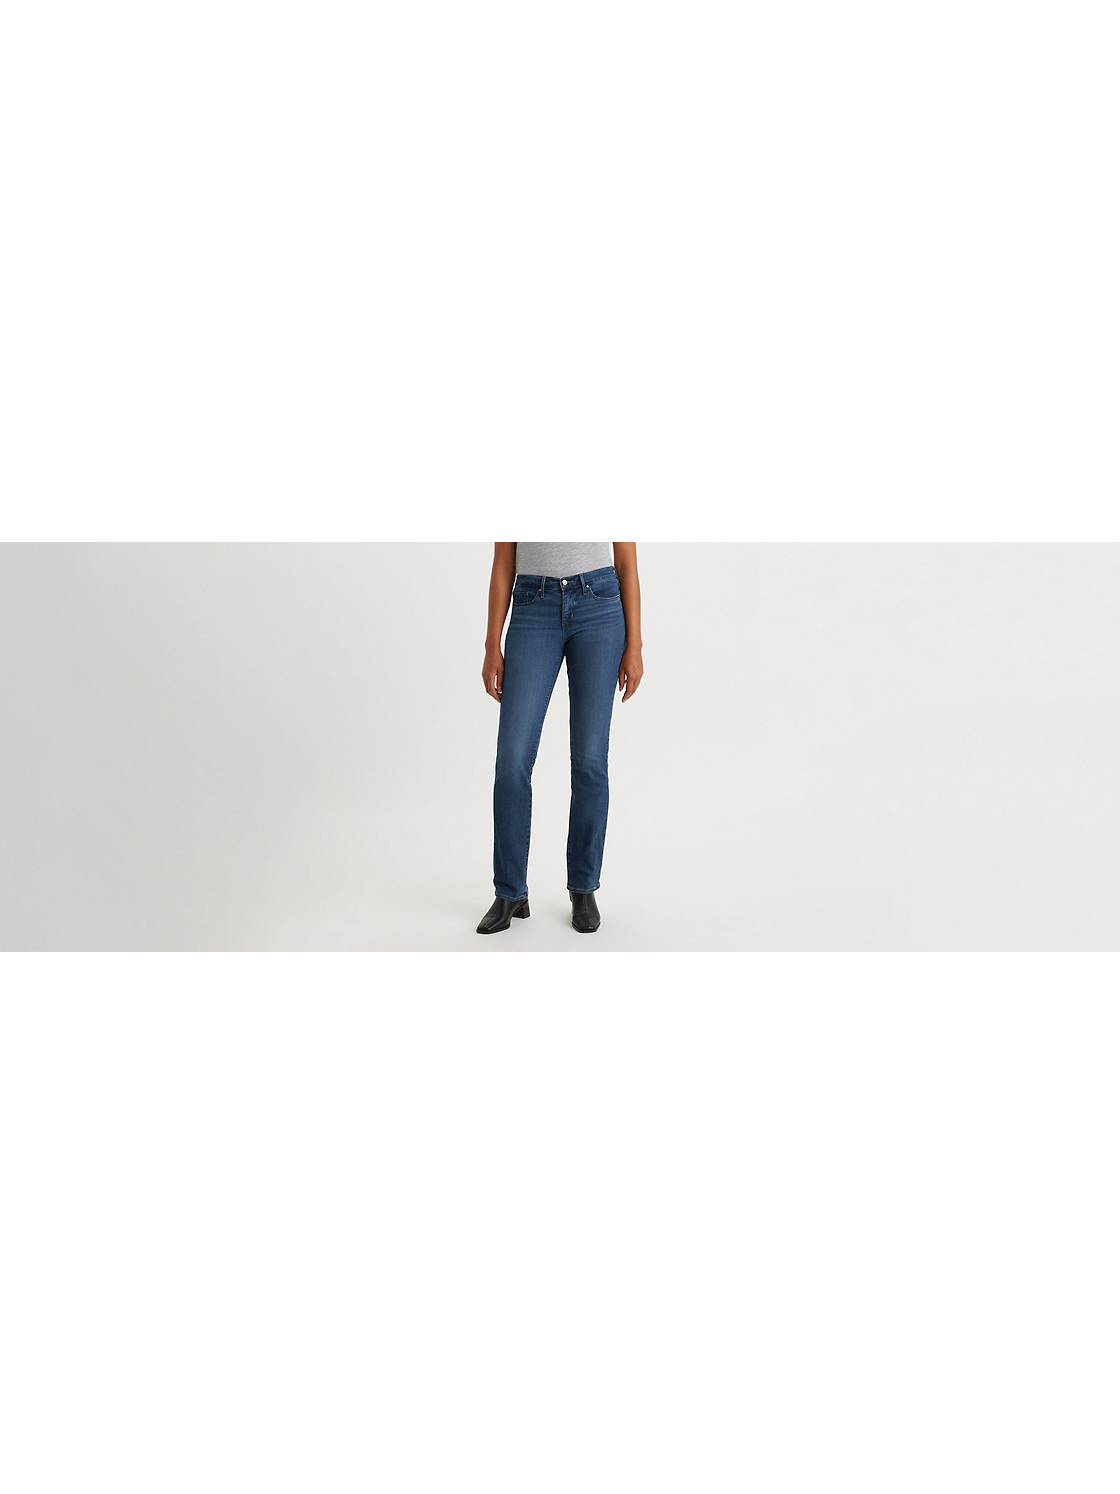 Jeans: Shop Best Jeans Women| Levi's® US